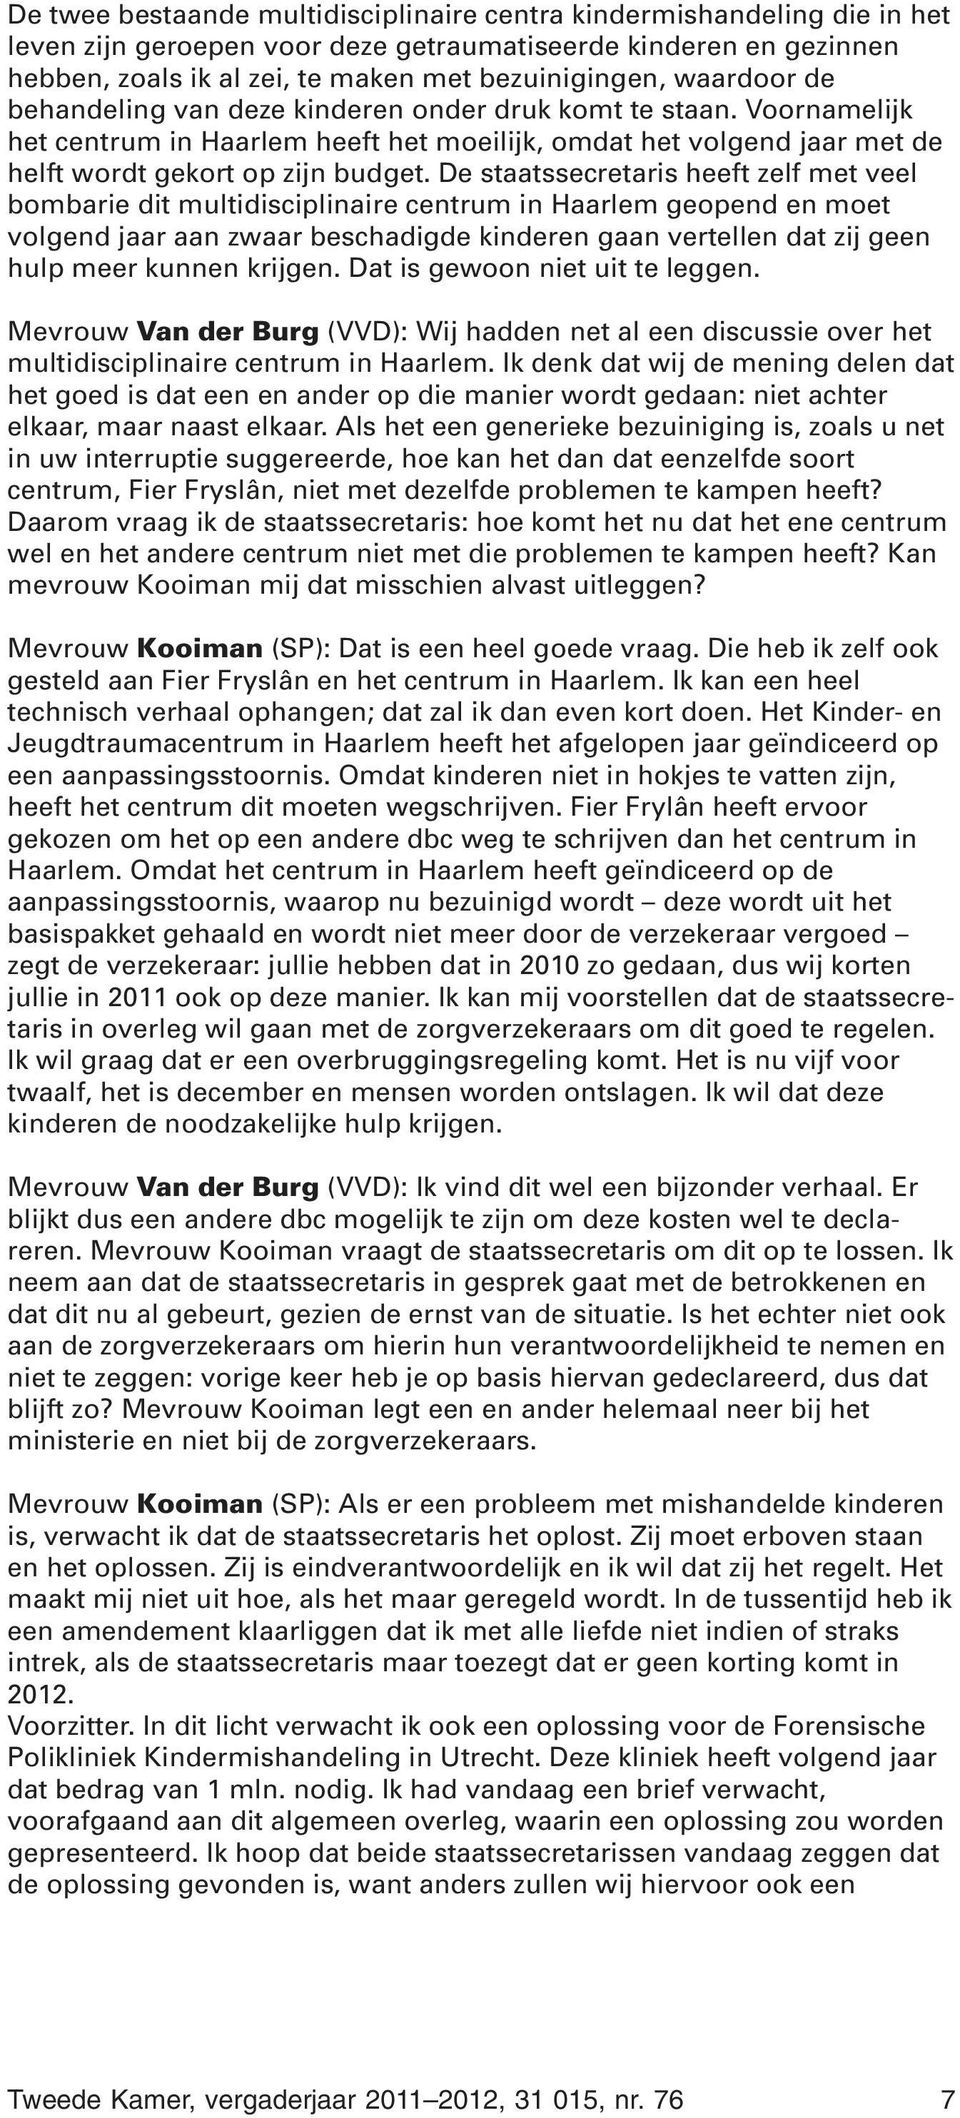 De staatssecretaris heeft zelf met veel bombarie dit multidisciplinaire centrum in Haarlem geopend en moet volgend jaar aan zwaar beschadigde kinderen gaan vertellen dat zij geen hulp meer kunnen